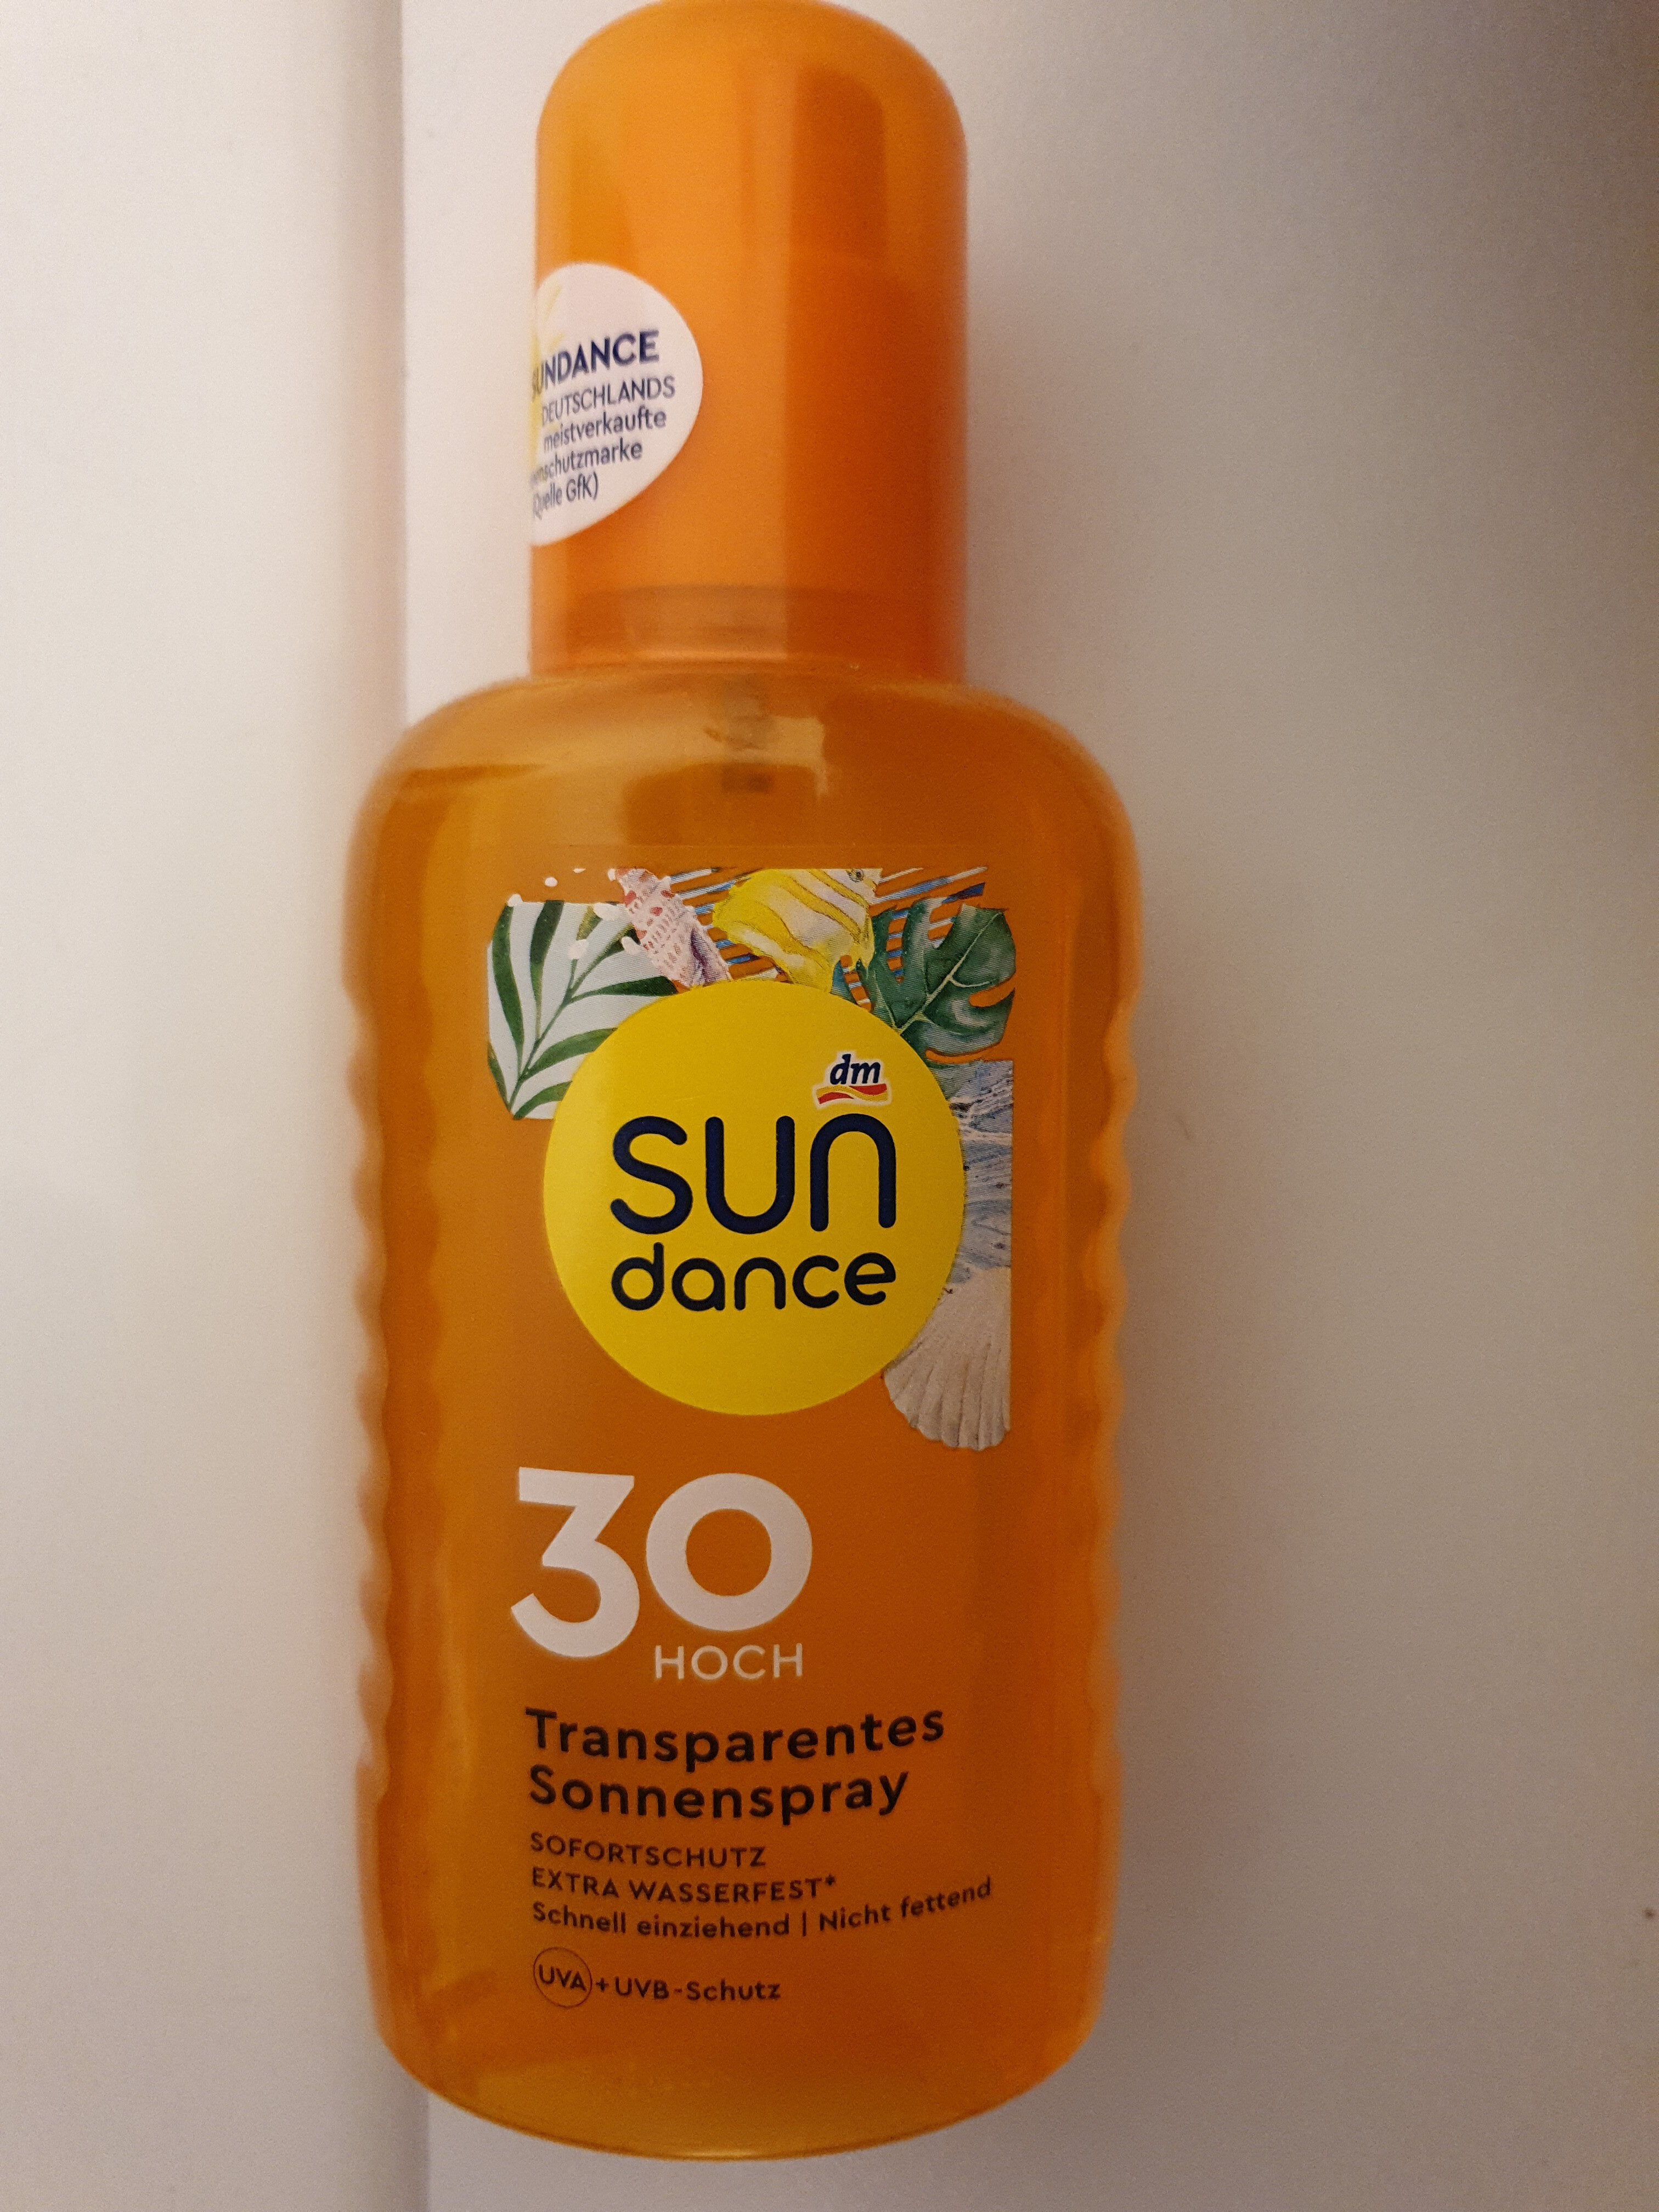 sun dance 30 transparentes sonnenspray - Produkt - de